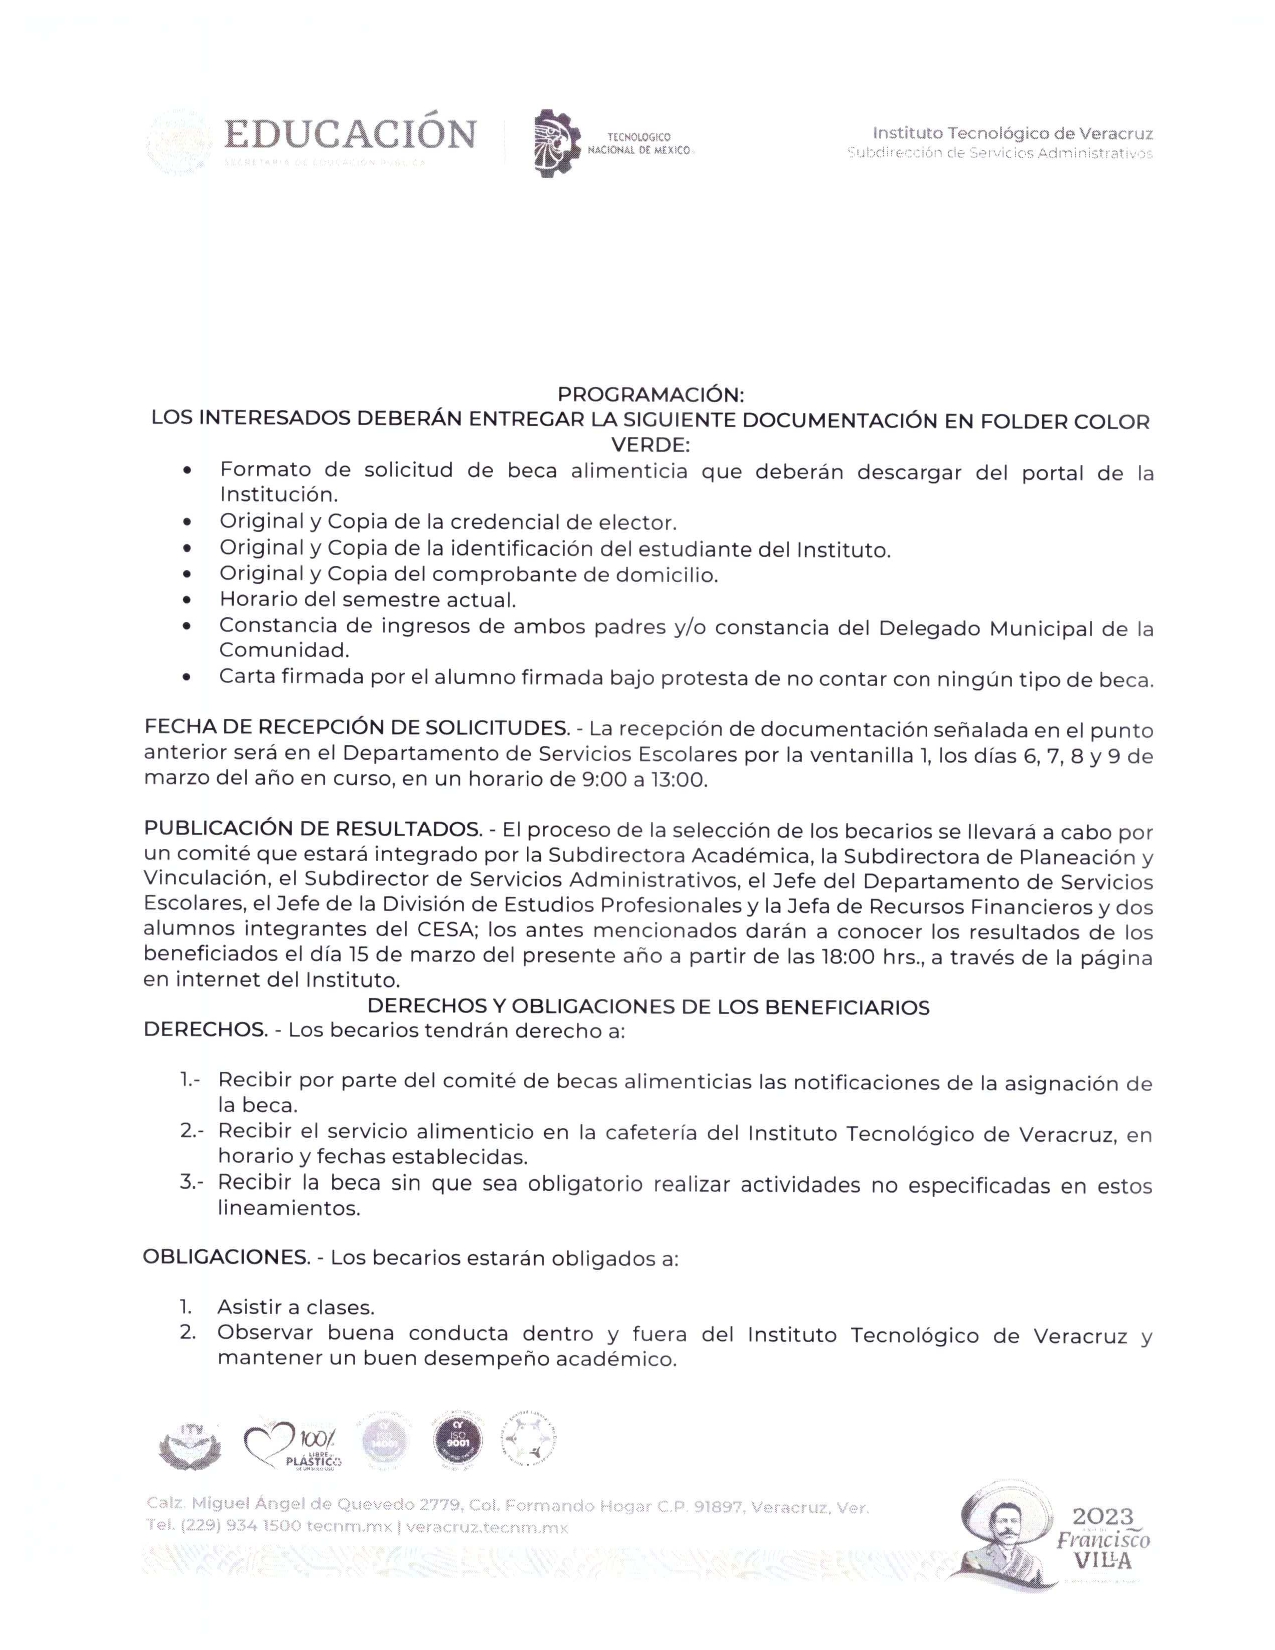 CONVOCATORIA_BECA-ALIMENTICIA_2023_page-0002.jpg